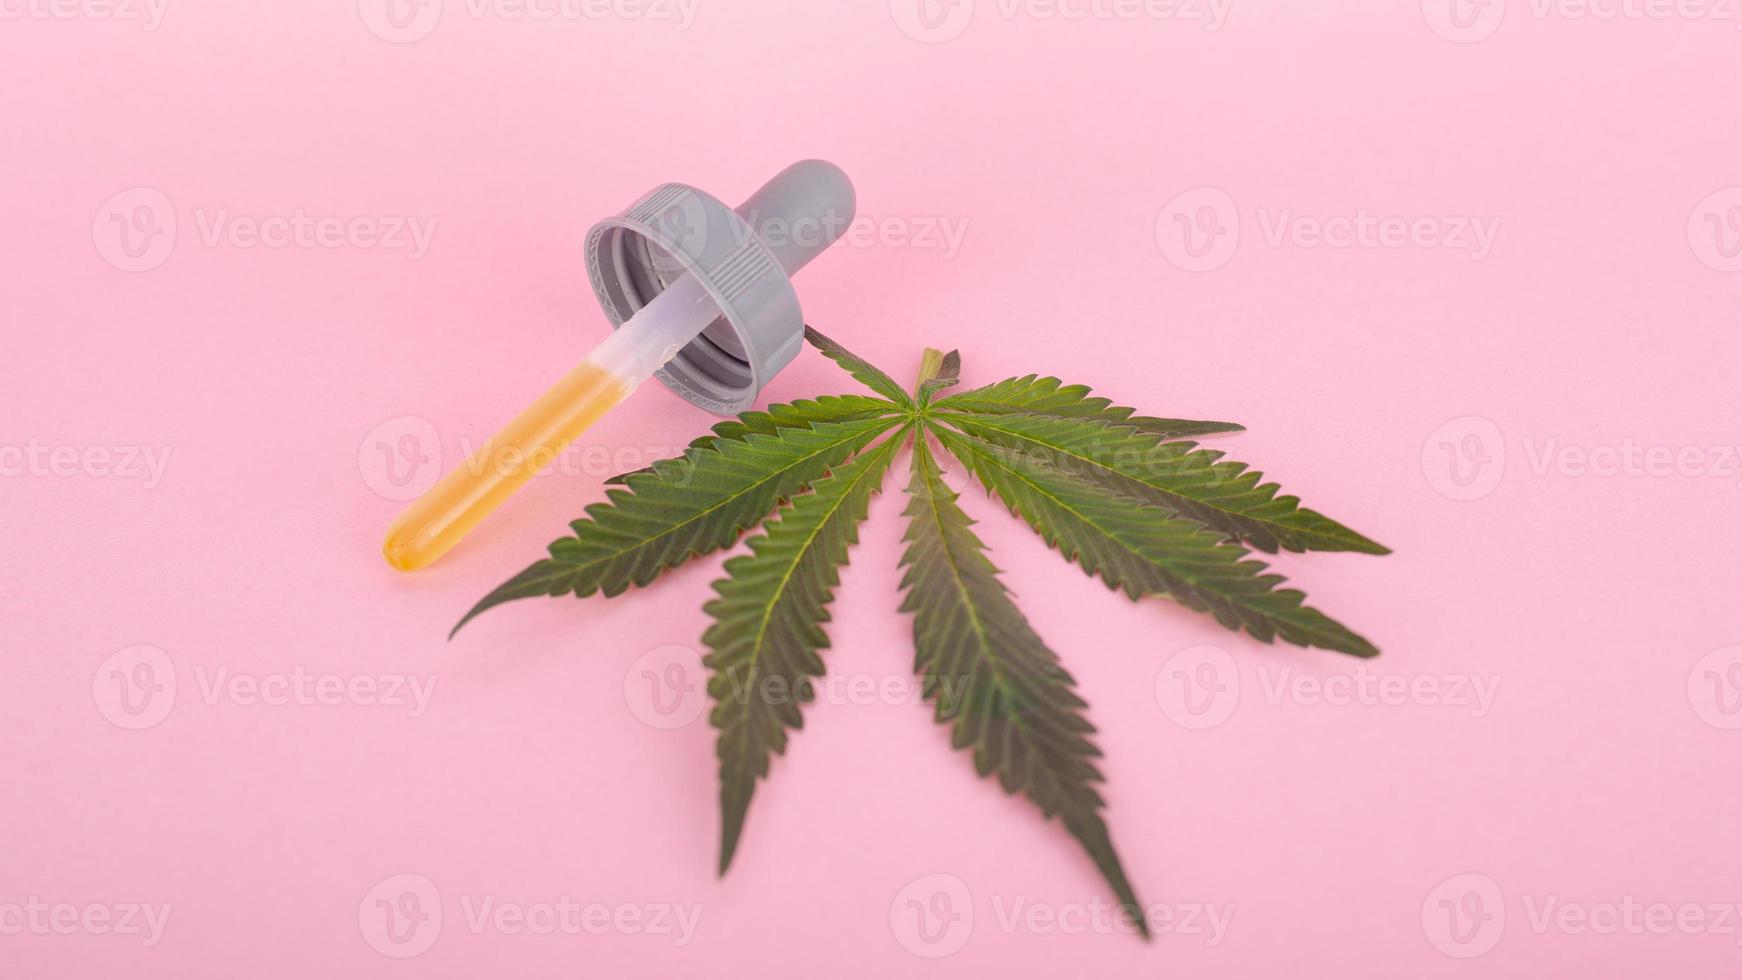 cannabisblad och pipett med thc på en rosa bakgrund foto